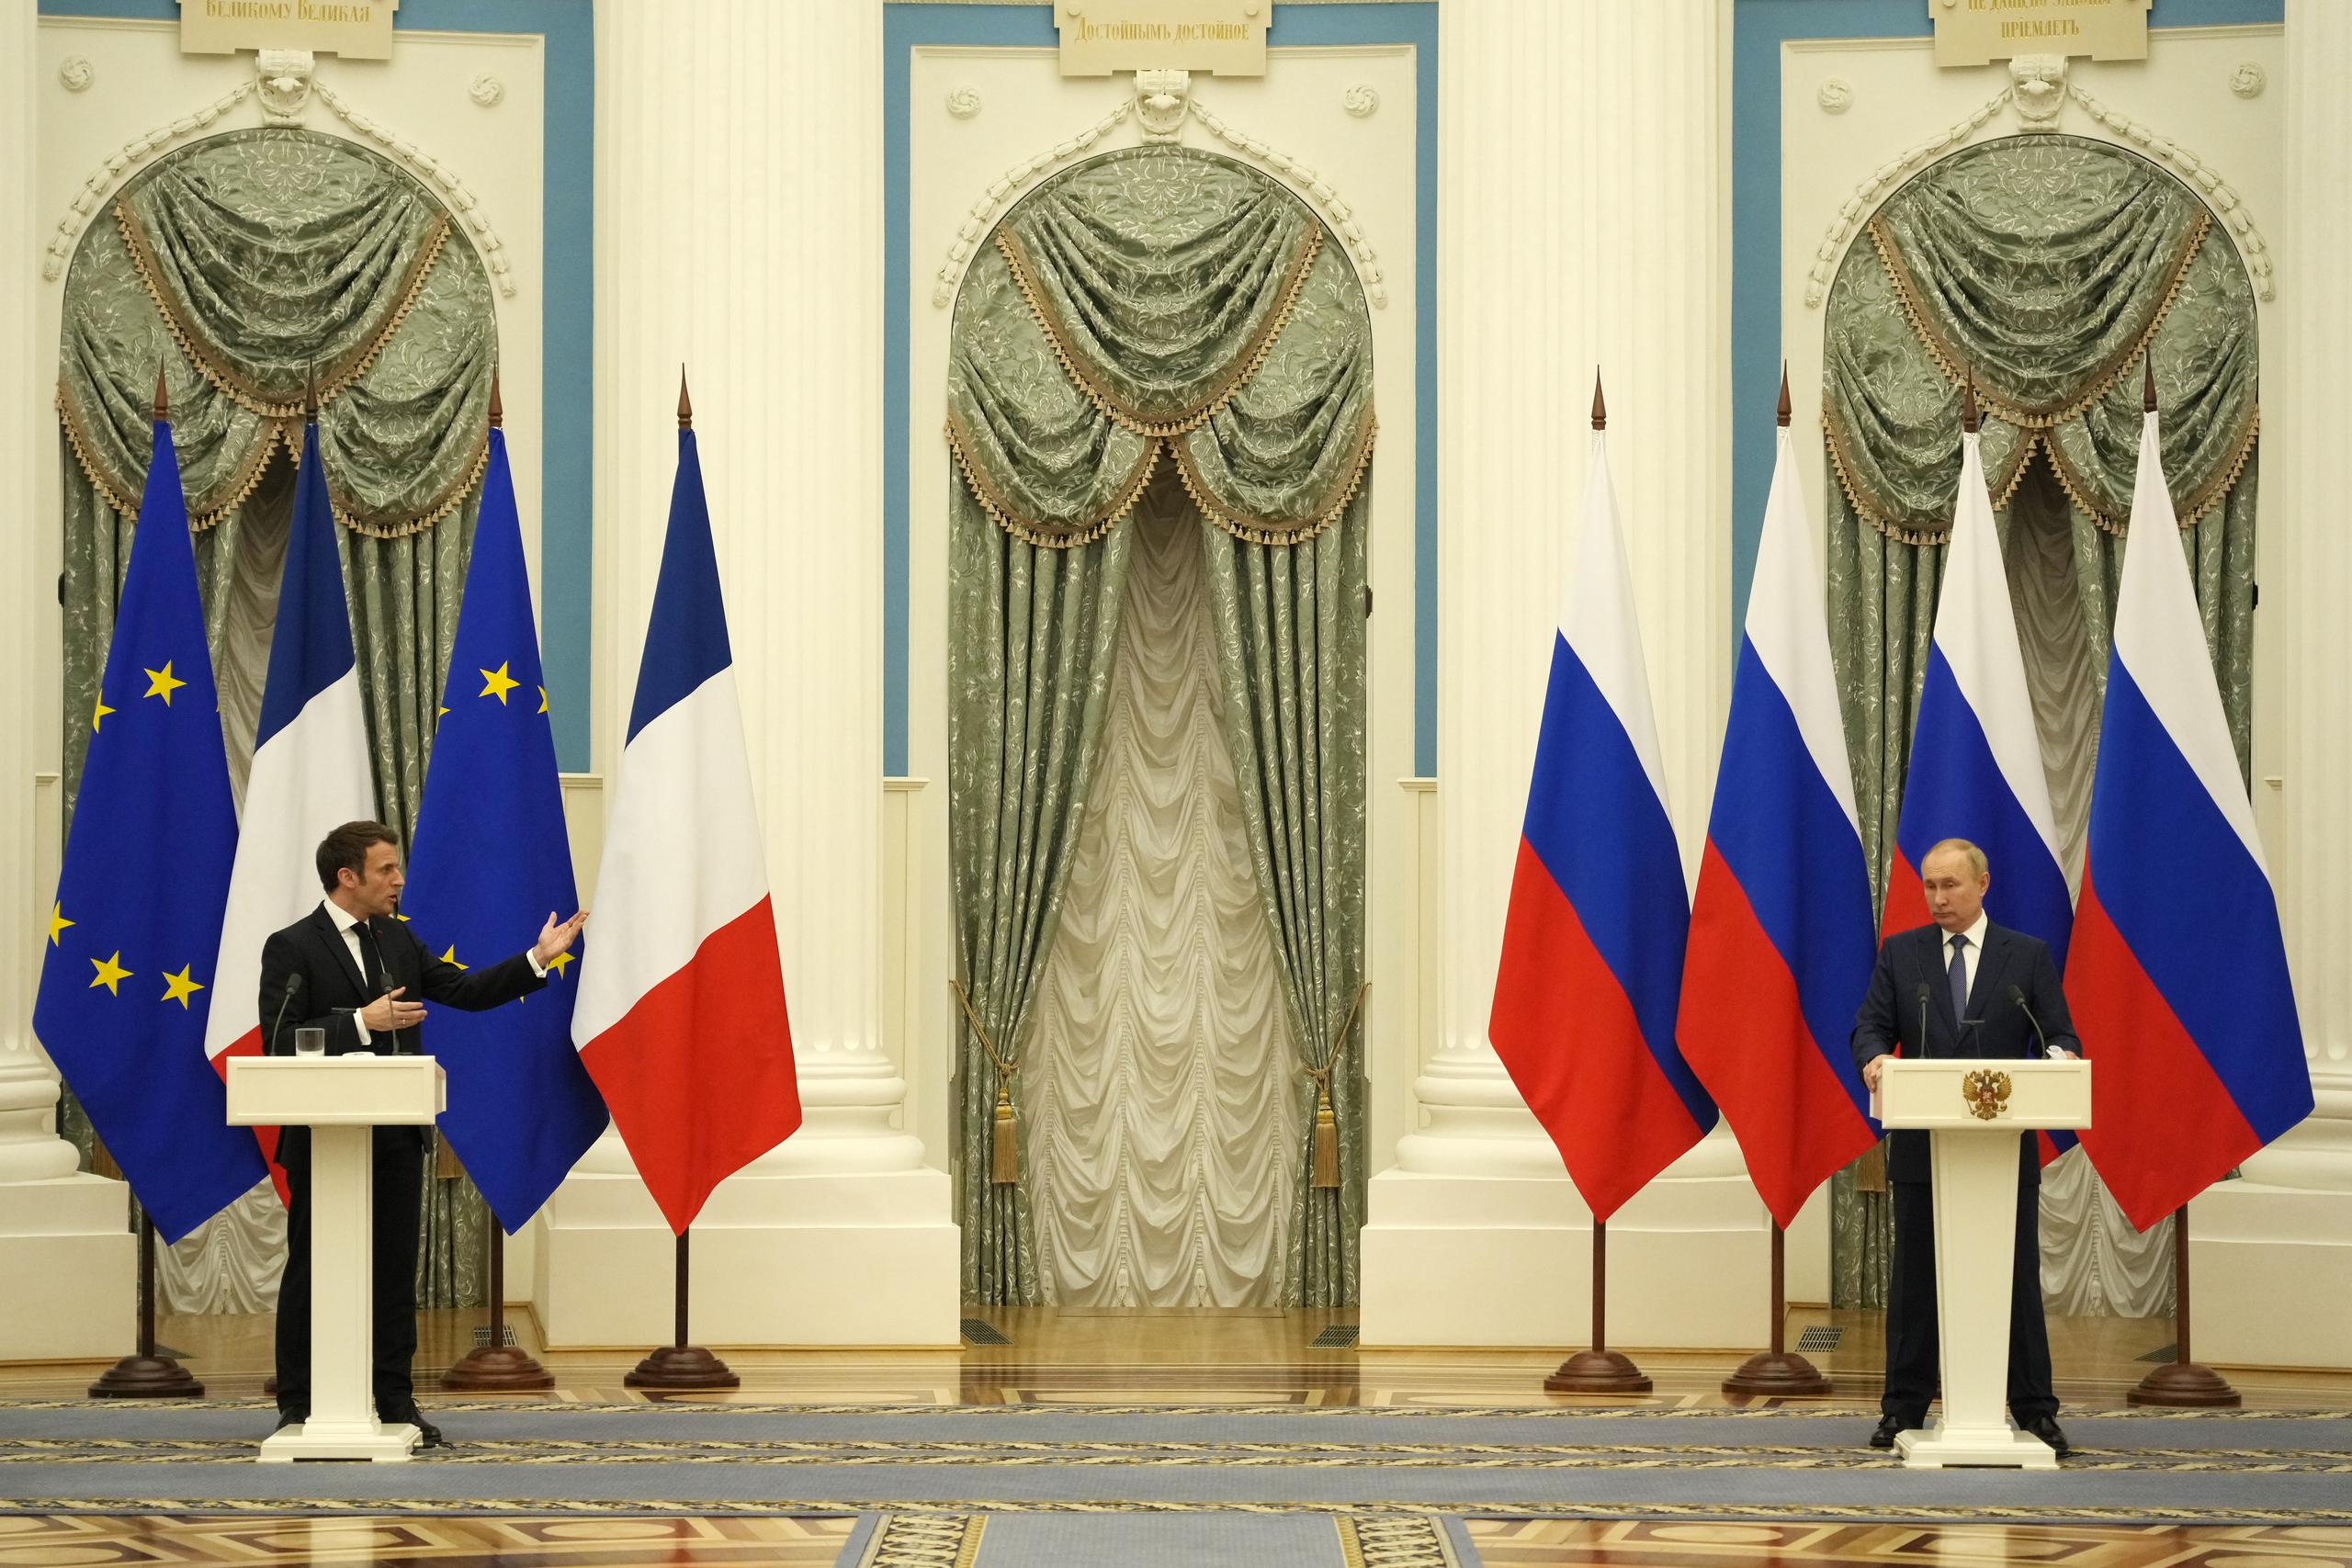 Emmanuel Macron dijo que los asesores presidenciales de Francia, Alemania, Rusia y Ucrania se reunirán el jueves en Berlín para discutir los próximos pasos. El diálogo es la única manera de mitigar las tensiones, pero “los resultados tomarán tiempo”, dijo.